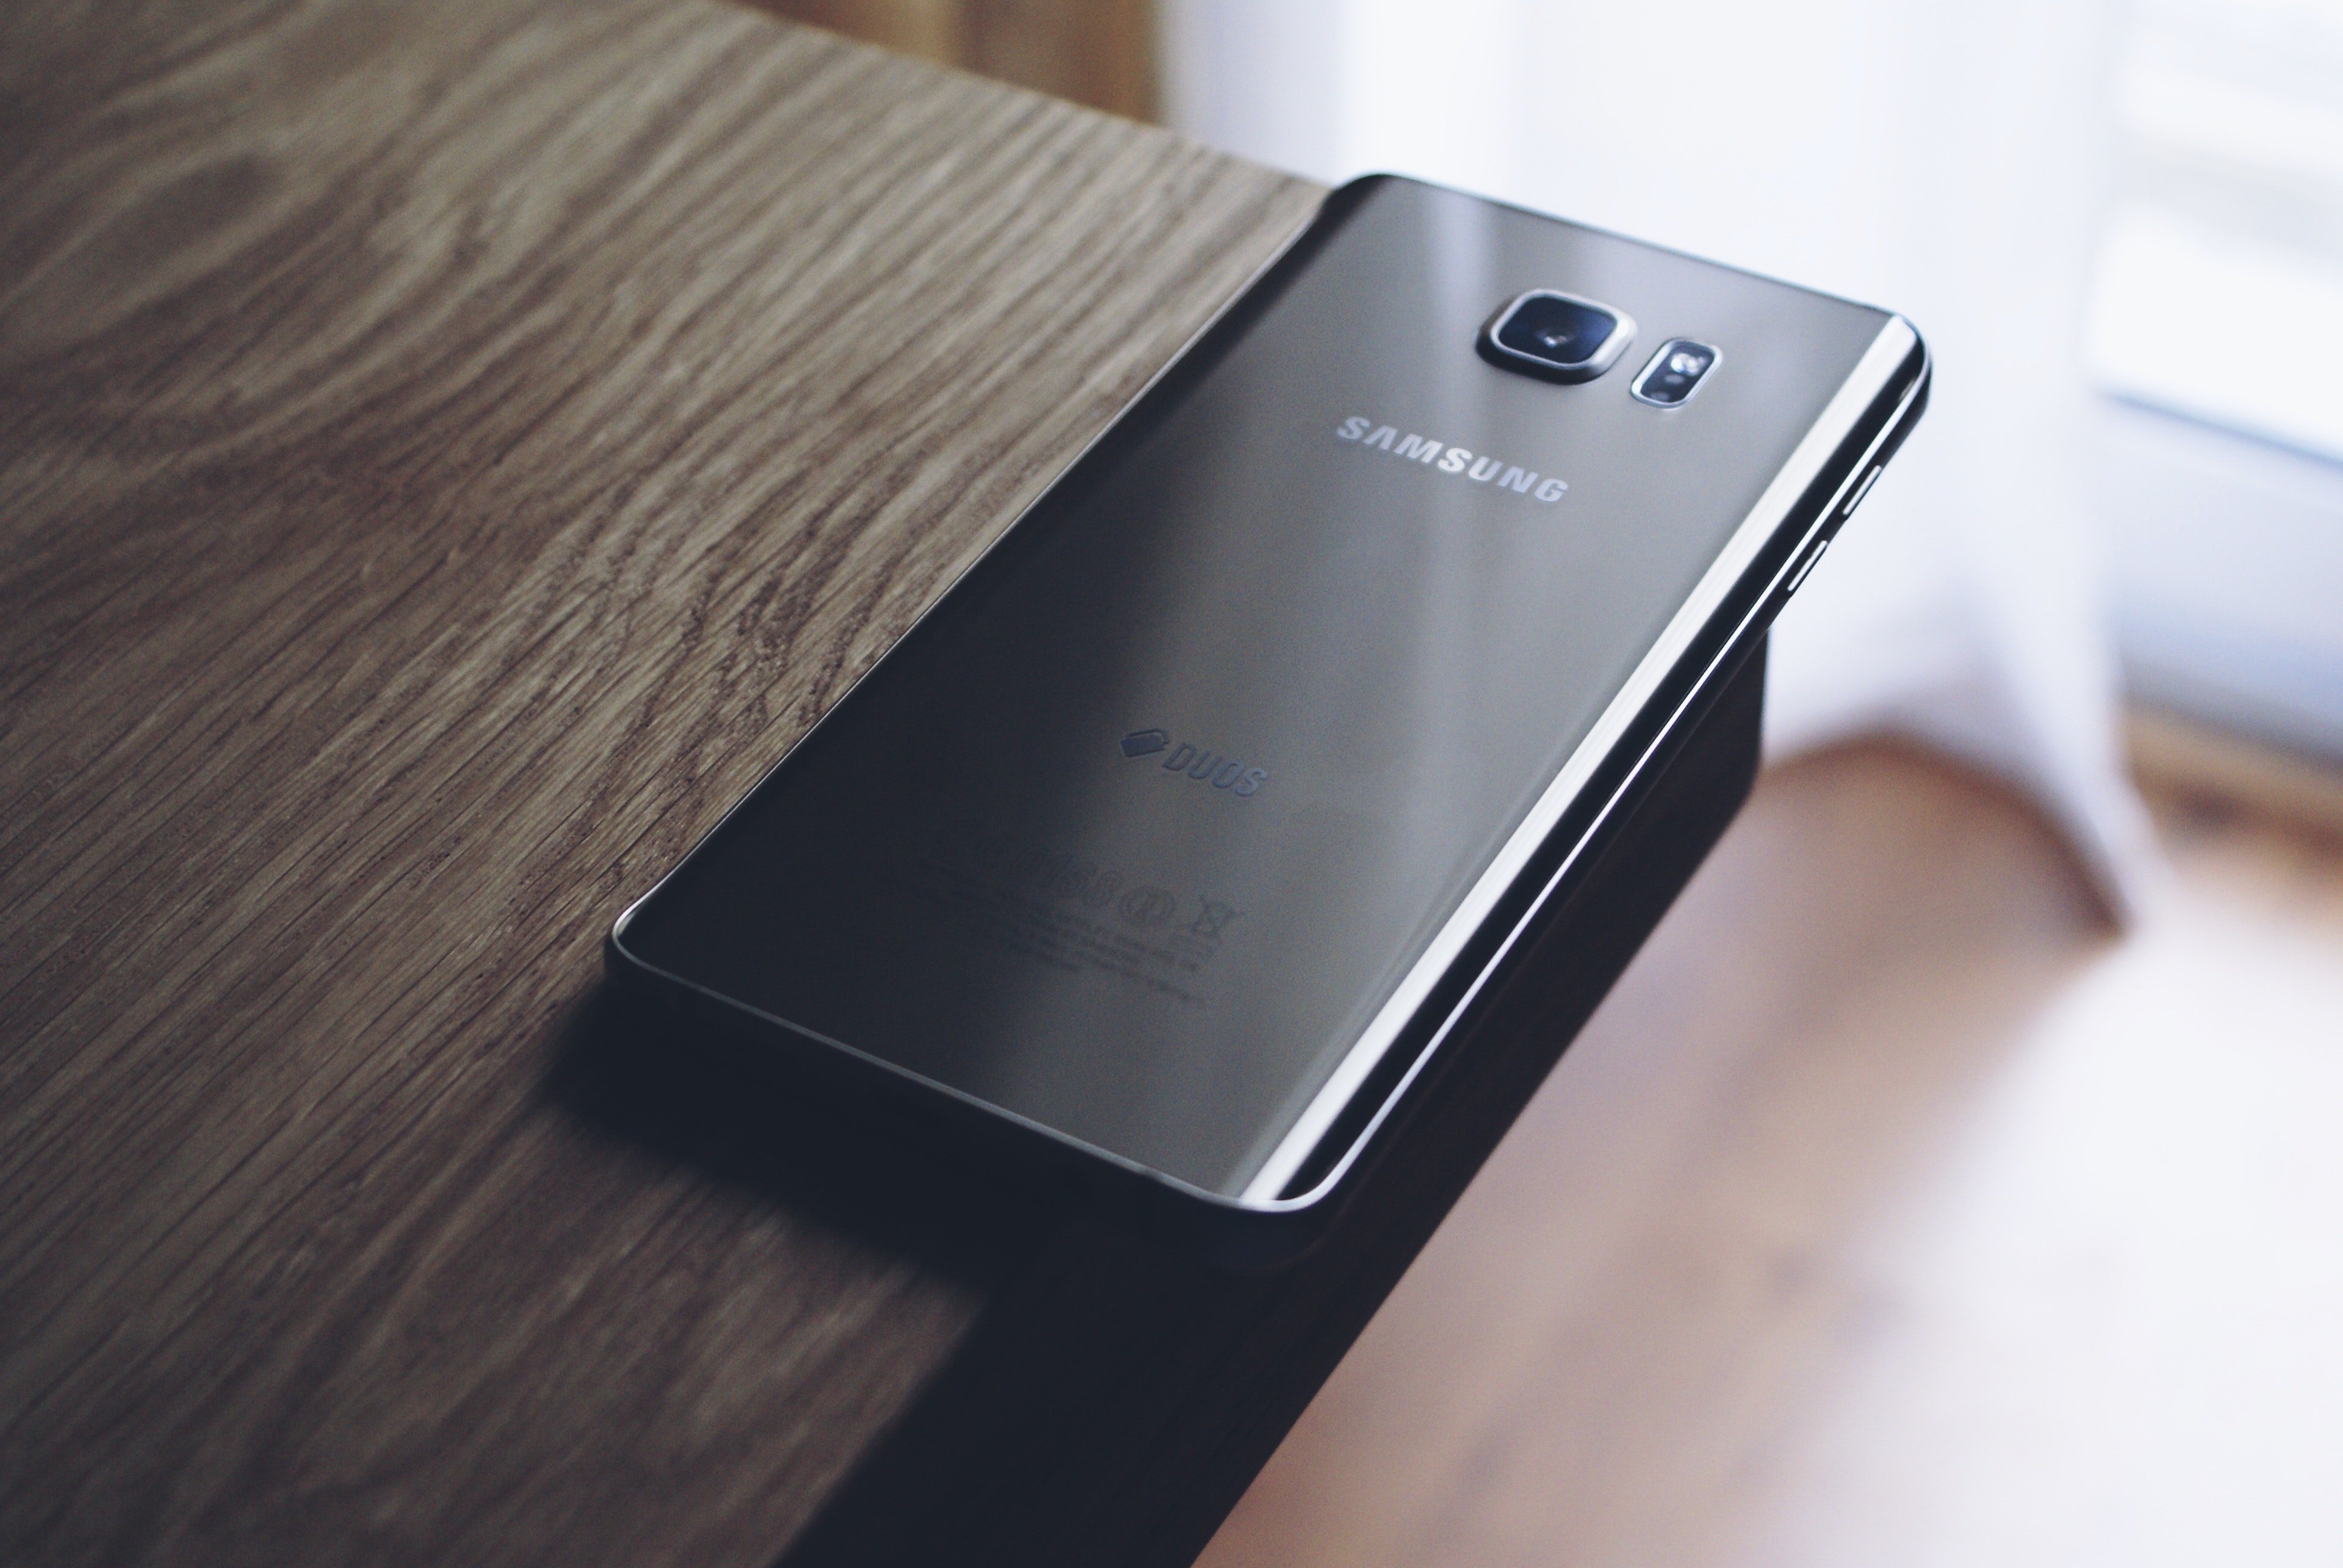 Keskmise hinnaga taskukohaste Android 5G nutitelefonide jaoks mõeldud Samsung Exynos 880 kiibistik näitab tehnilisi andmeid ja funktsioone